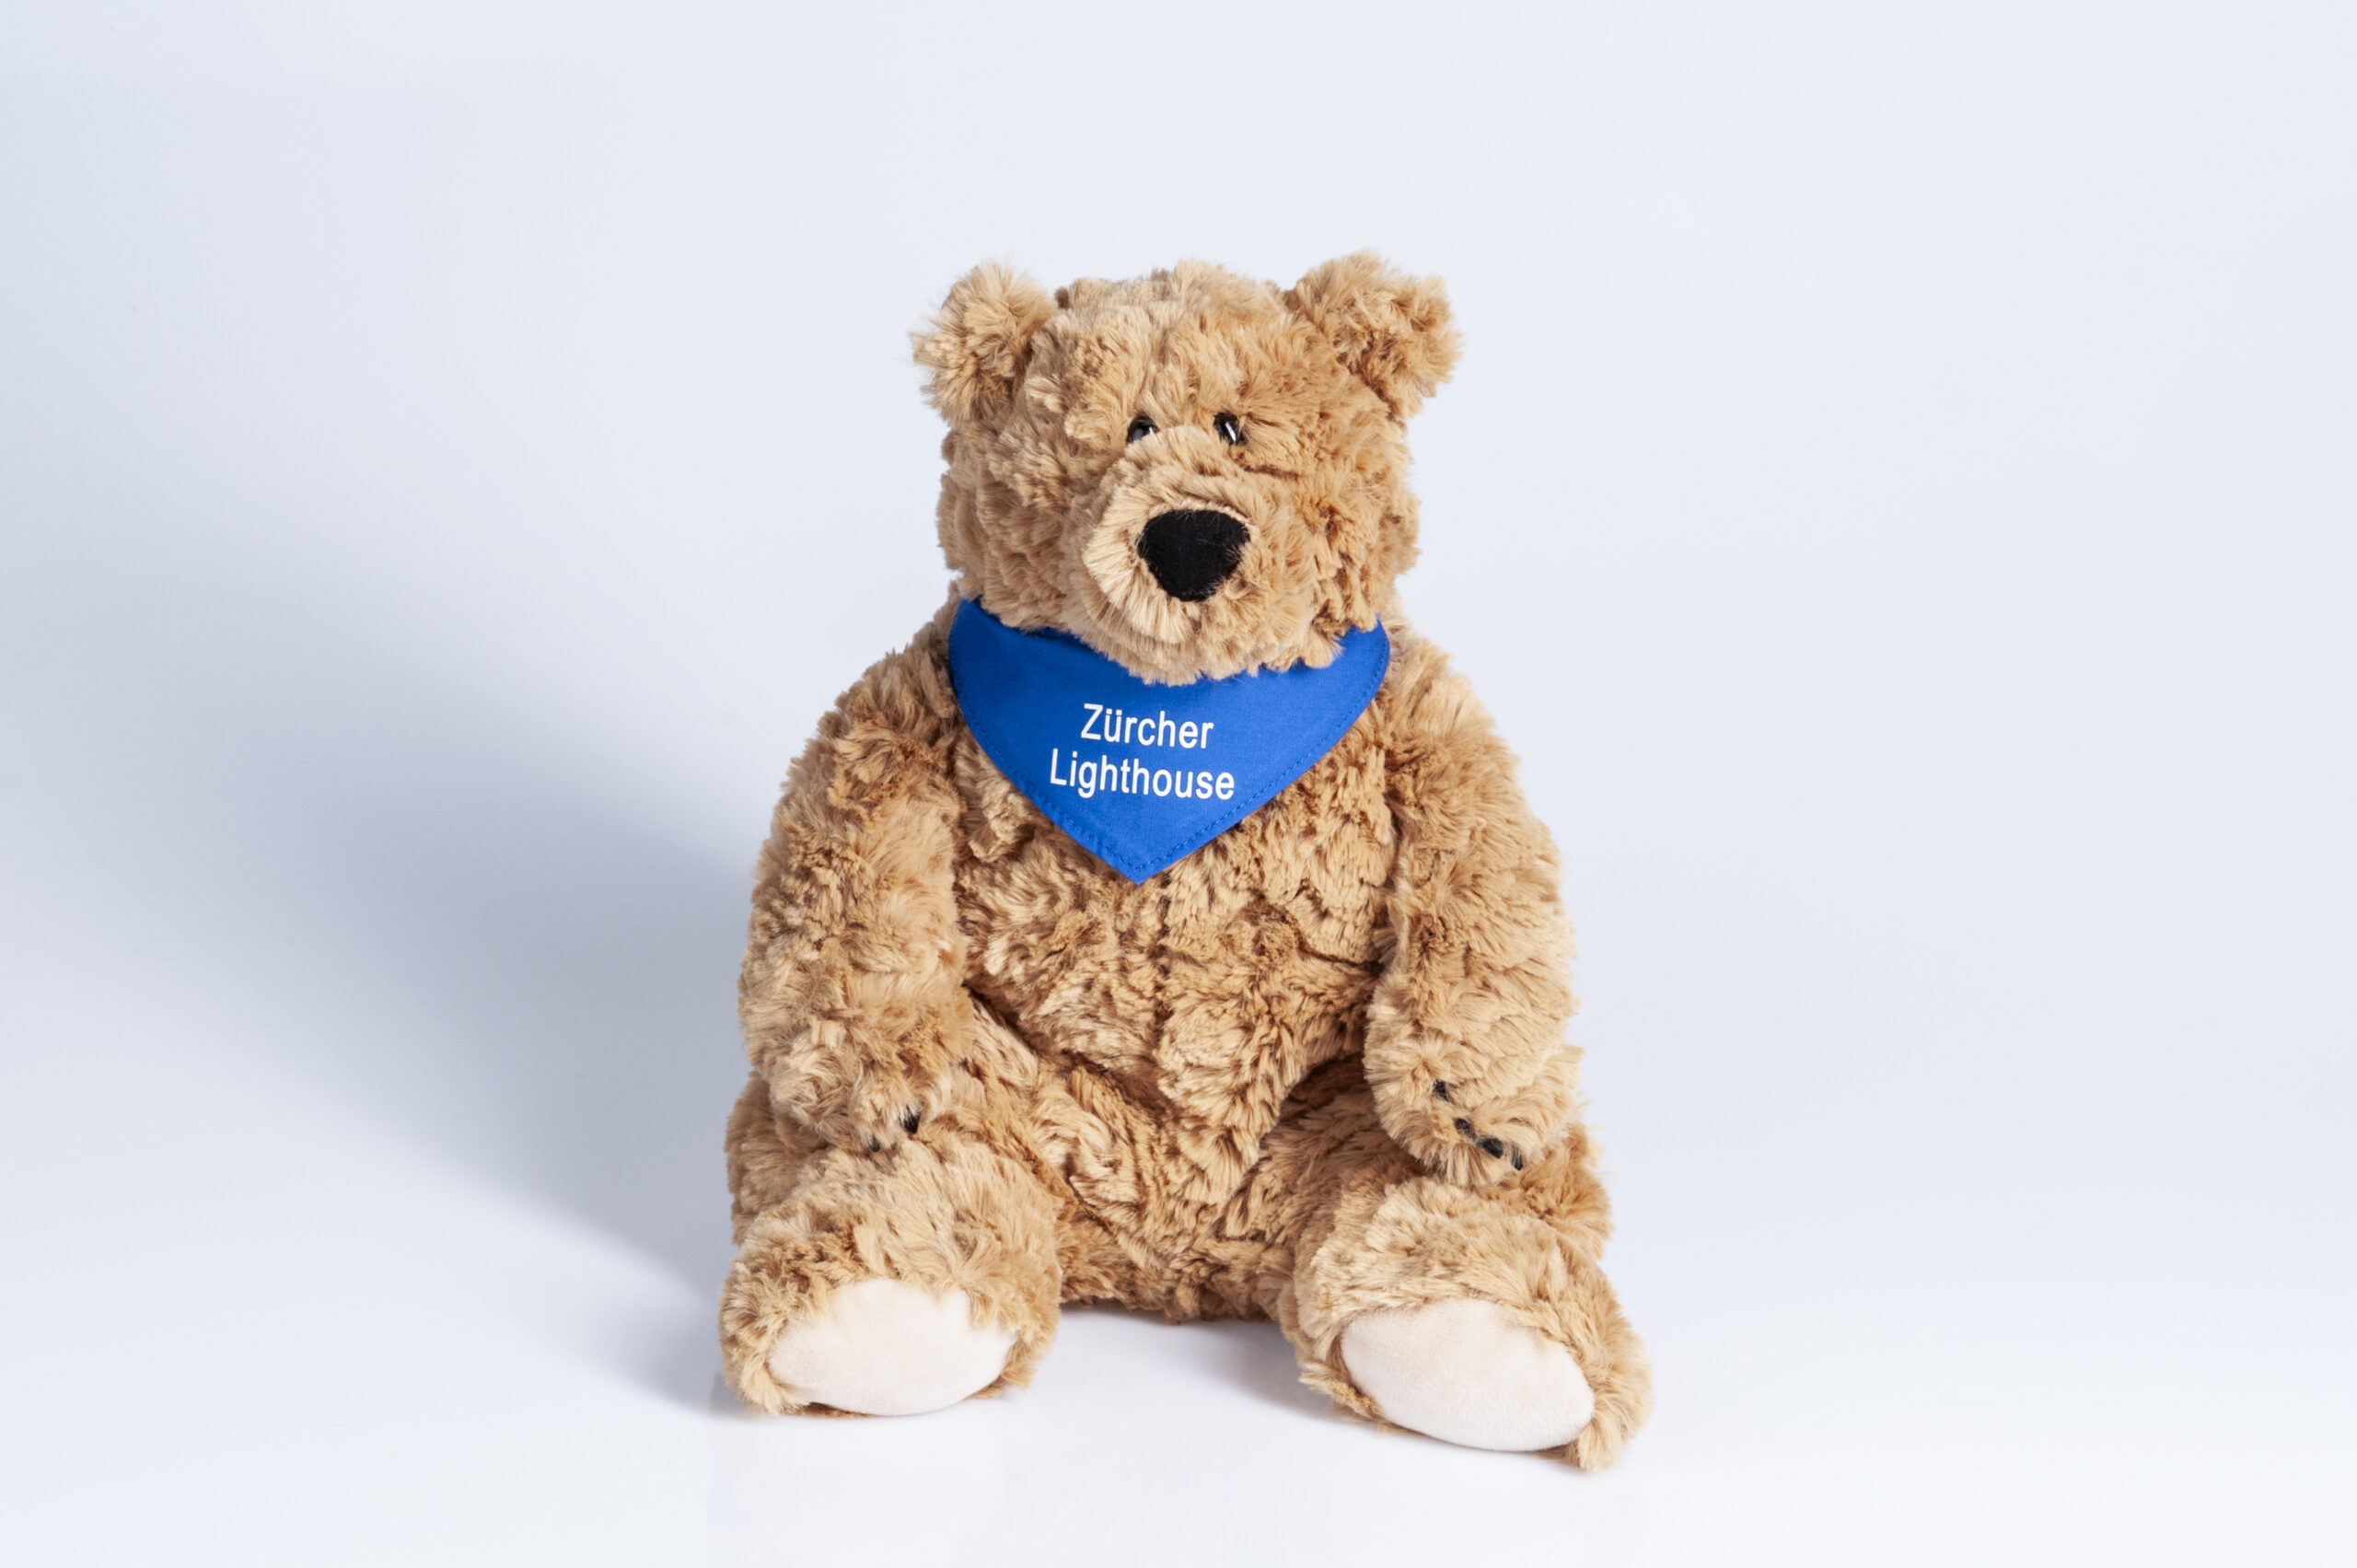 Teddybär Howi ist eine bärenstarke Unterstützung für die Palliative Pflege des Zürcher Lighthouse, Danke für jede Bestellung im Onlineshop